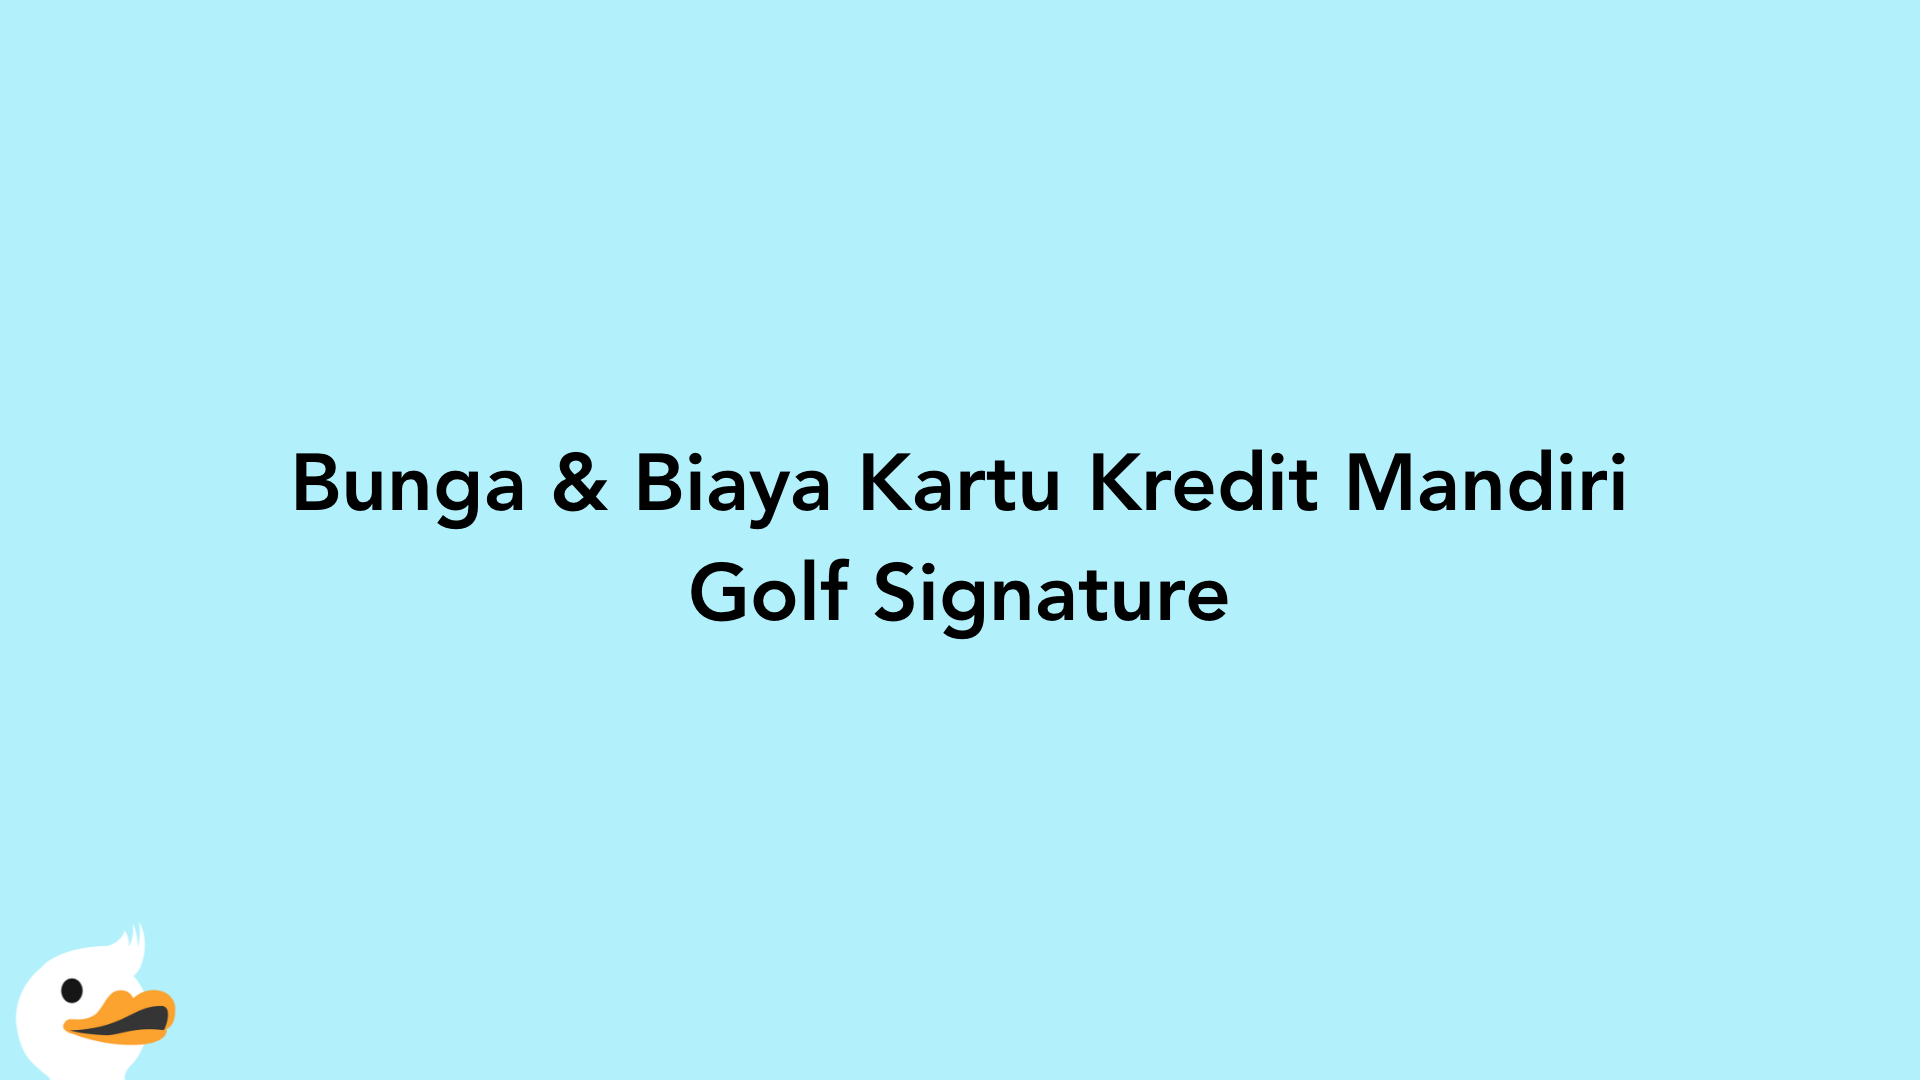 Bunga & Biaya Kartu Kredit Mandiri Golf Signature